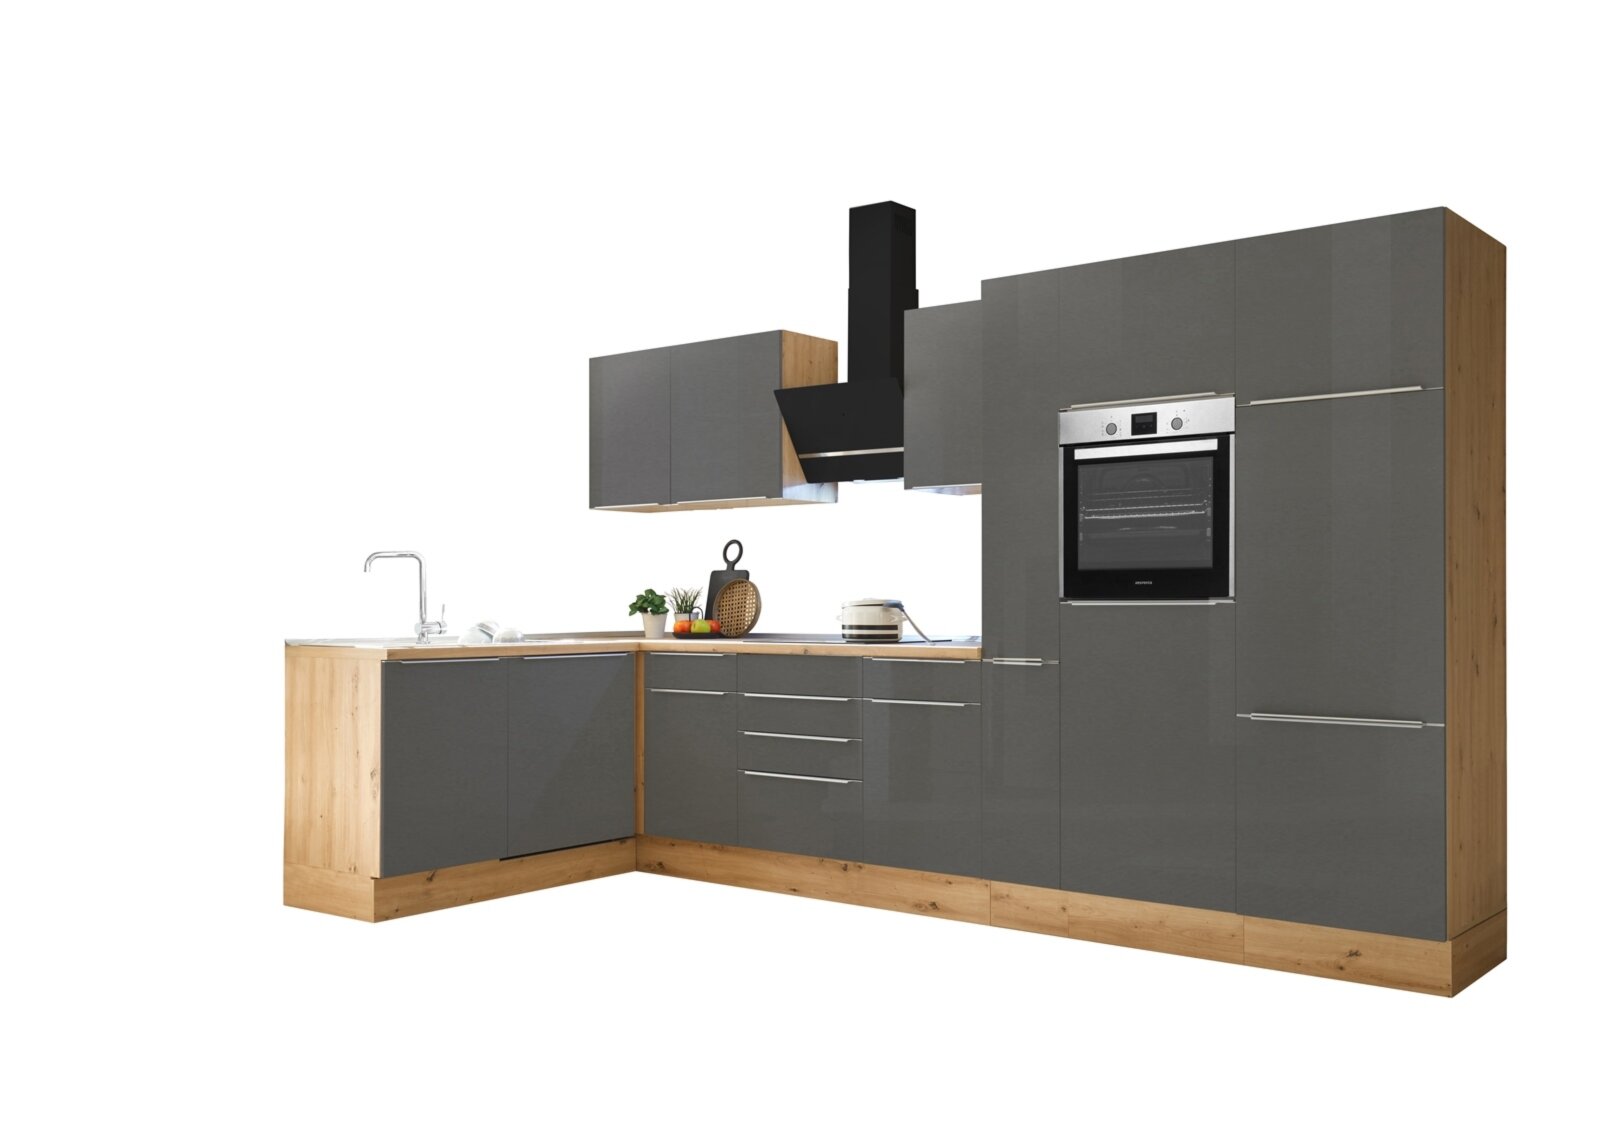 RESPEKTA Winkelküche - grau - Artisan Eiche - mit E-Geräten - 370 cm |  Online bei ROLLER kaufen